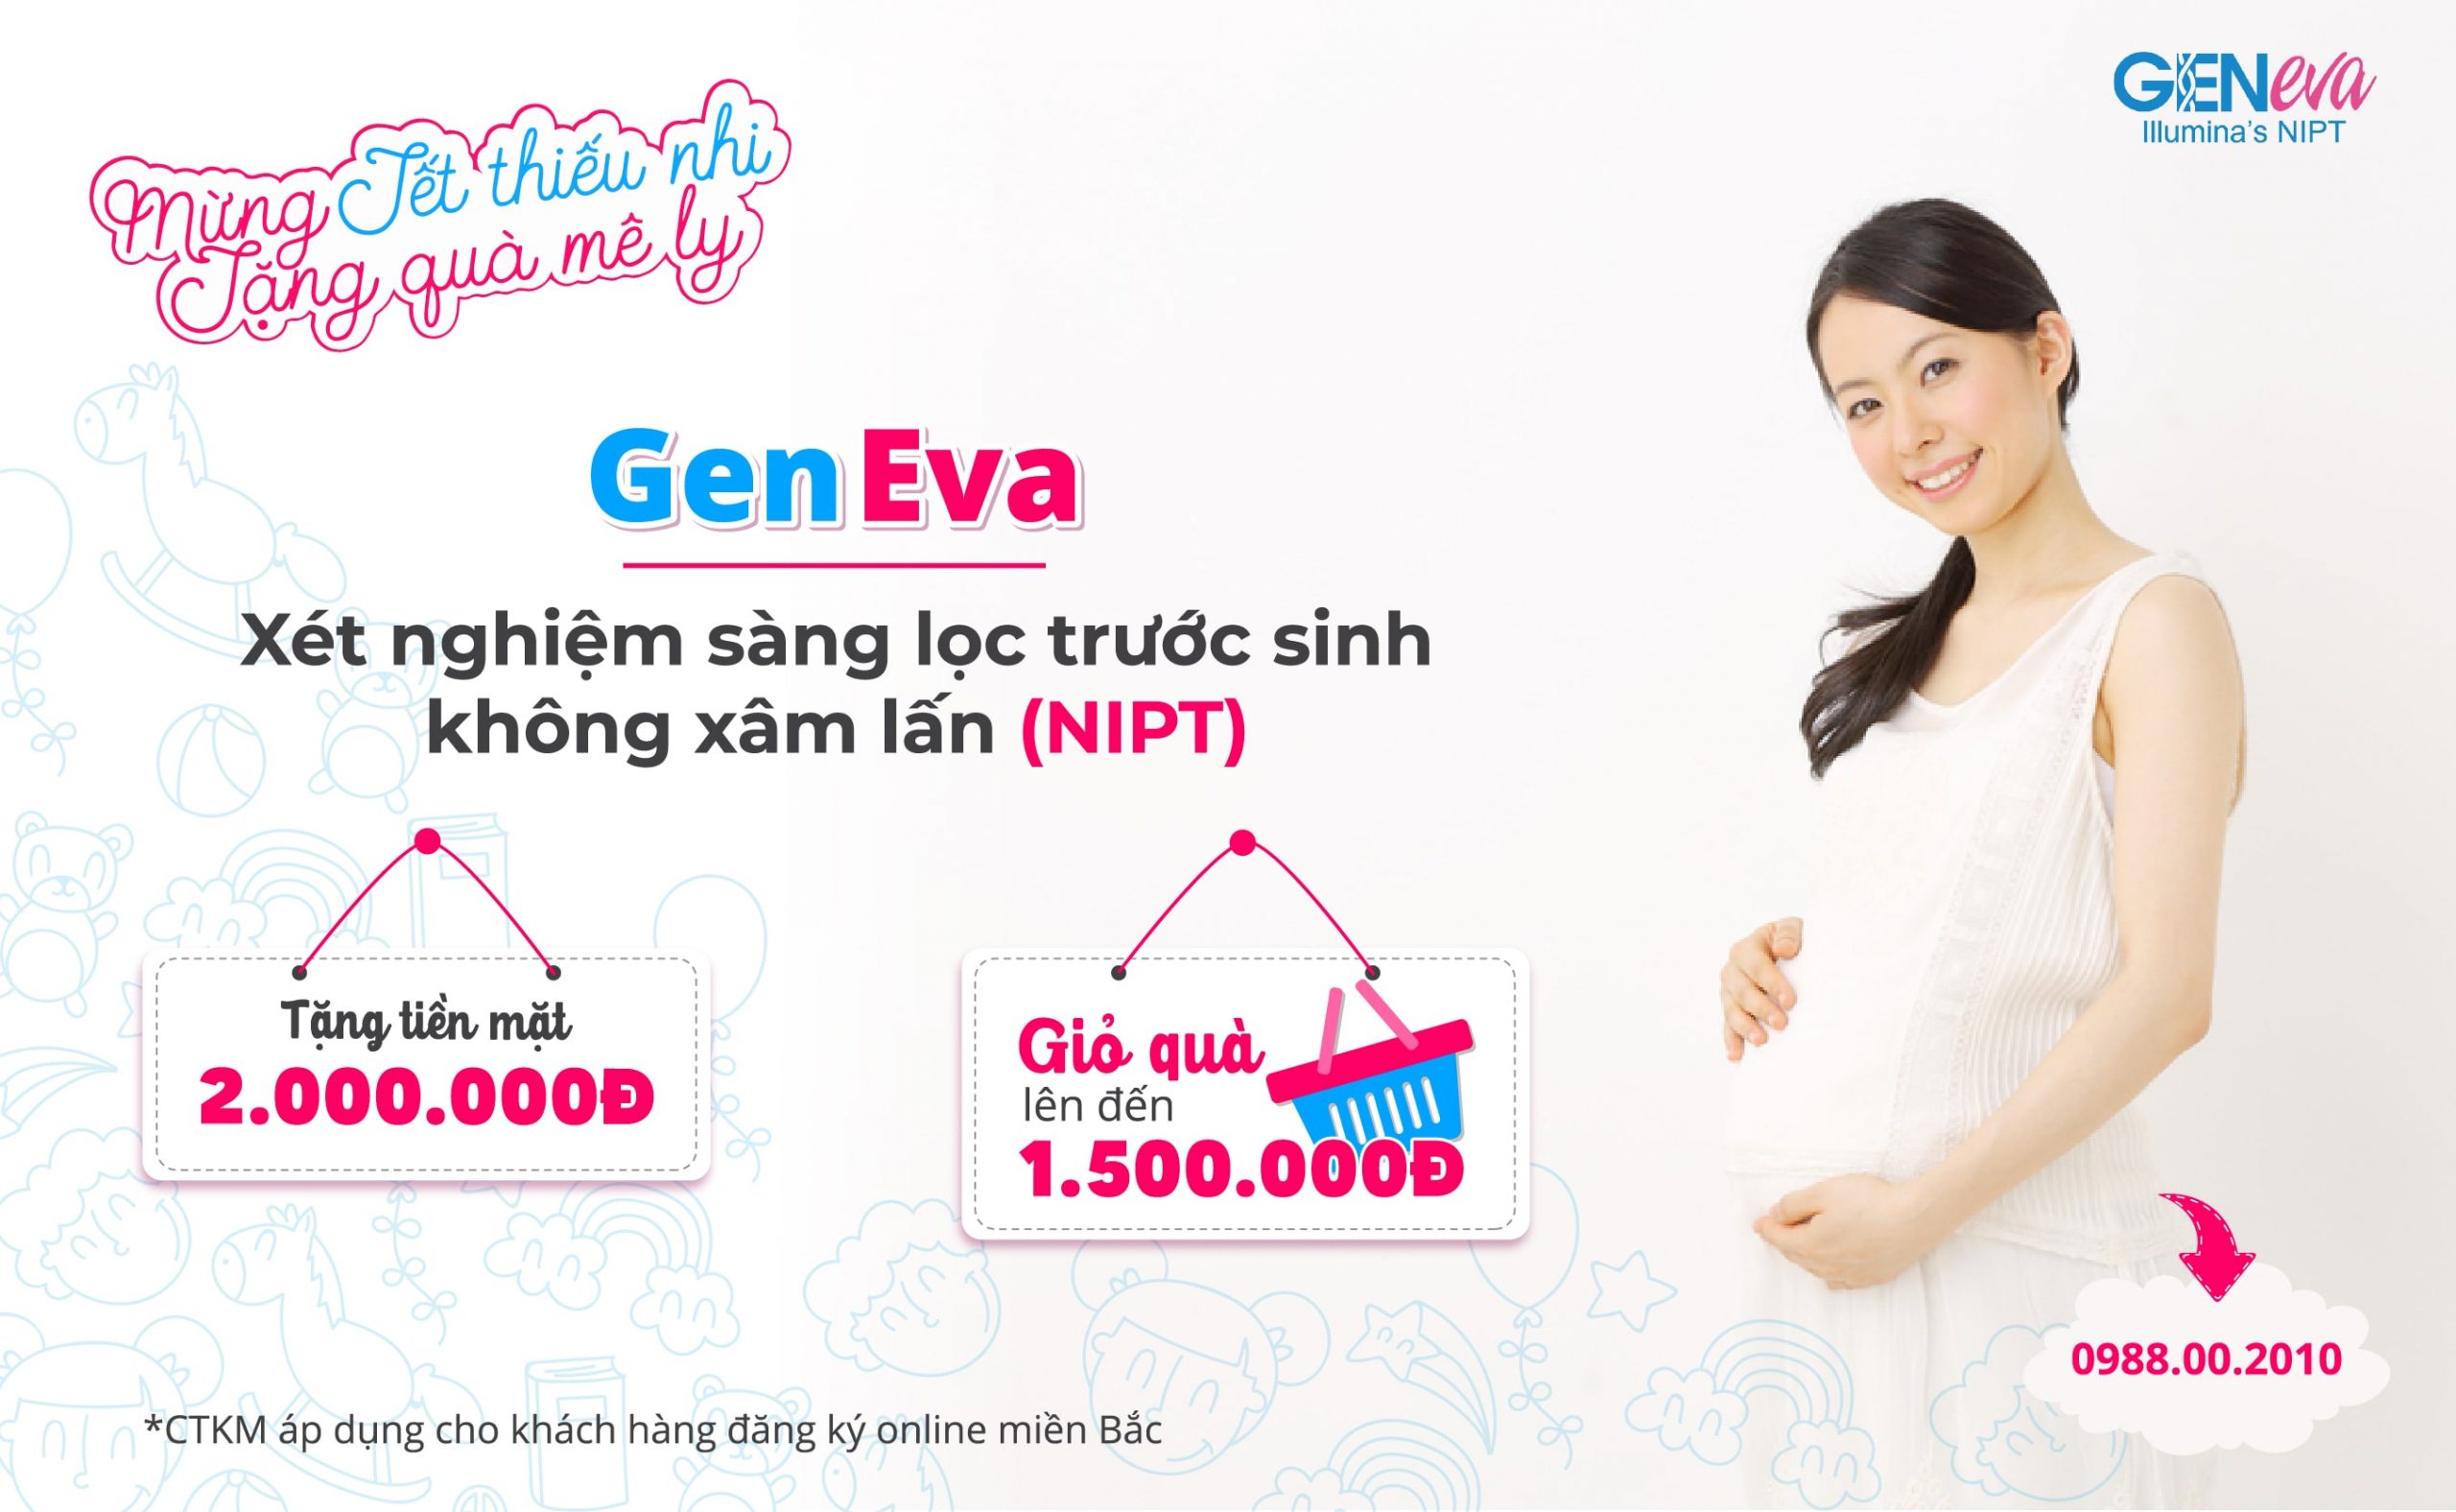 Mừng Tết thiếu nhi – Mẹ bầu nhận khuyến mãi lên đến 3.500.000đ khi đăng ký GenEva (NIPT – Illumina)